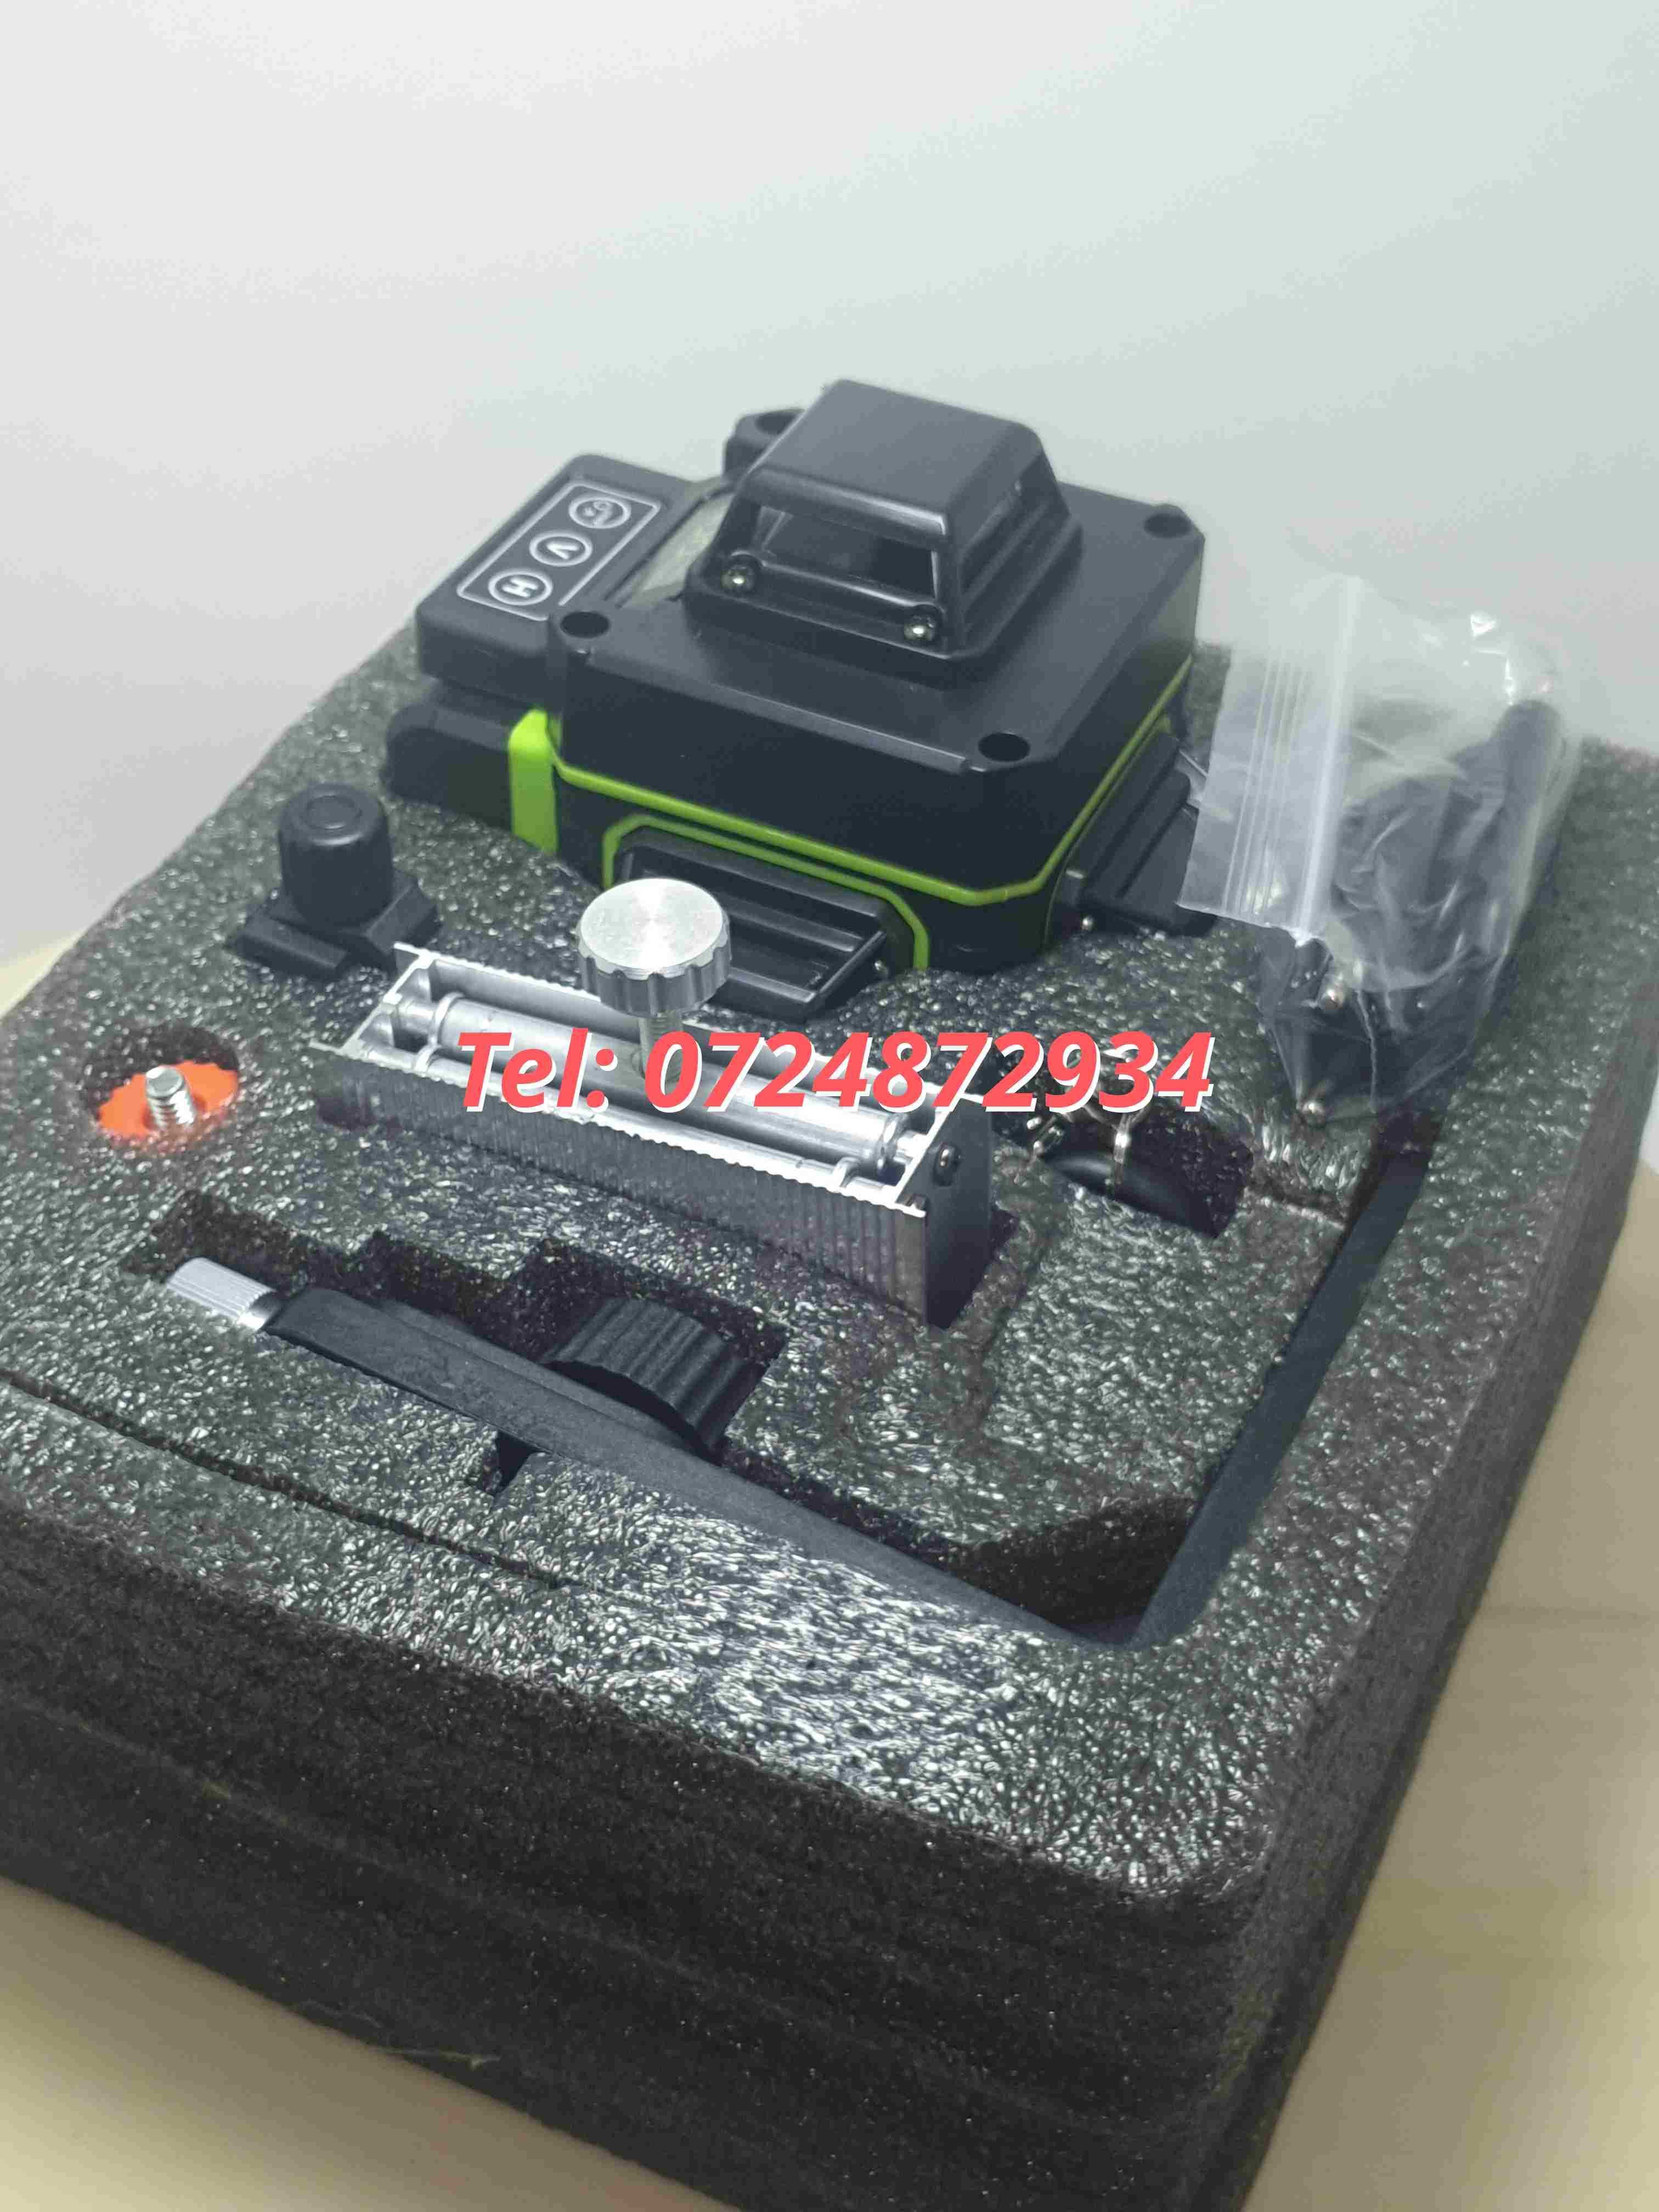 Promotie Nivela Laser Kmoon 16 Lini 4d Fascicul Laser Verde Cu 16 Li